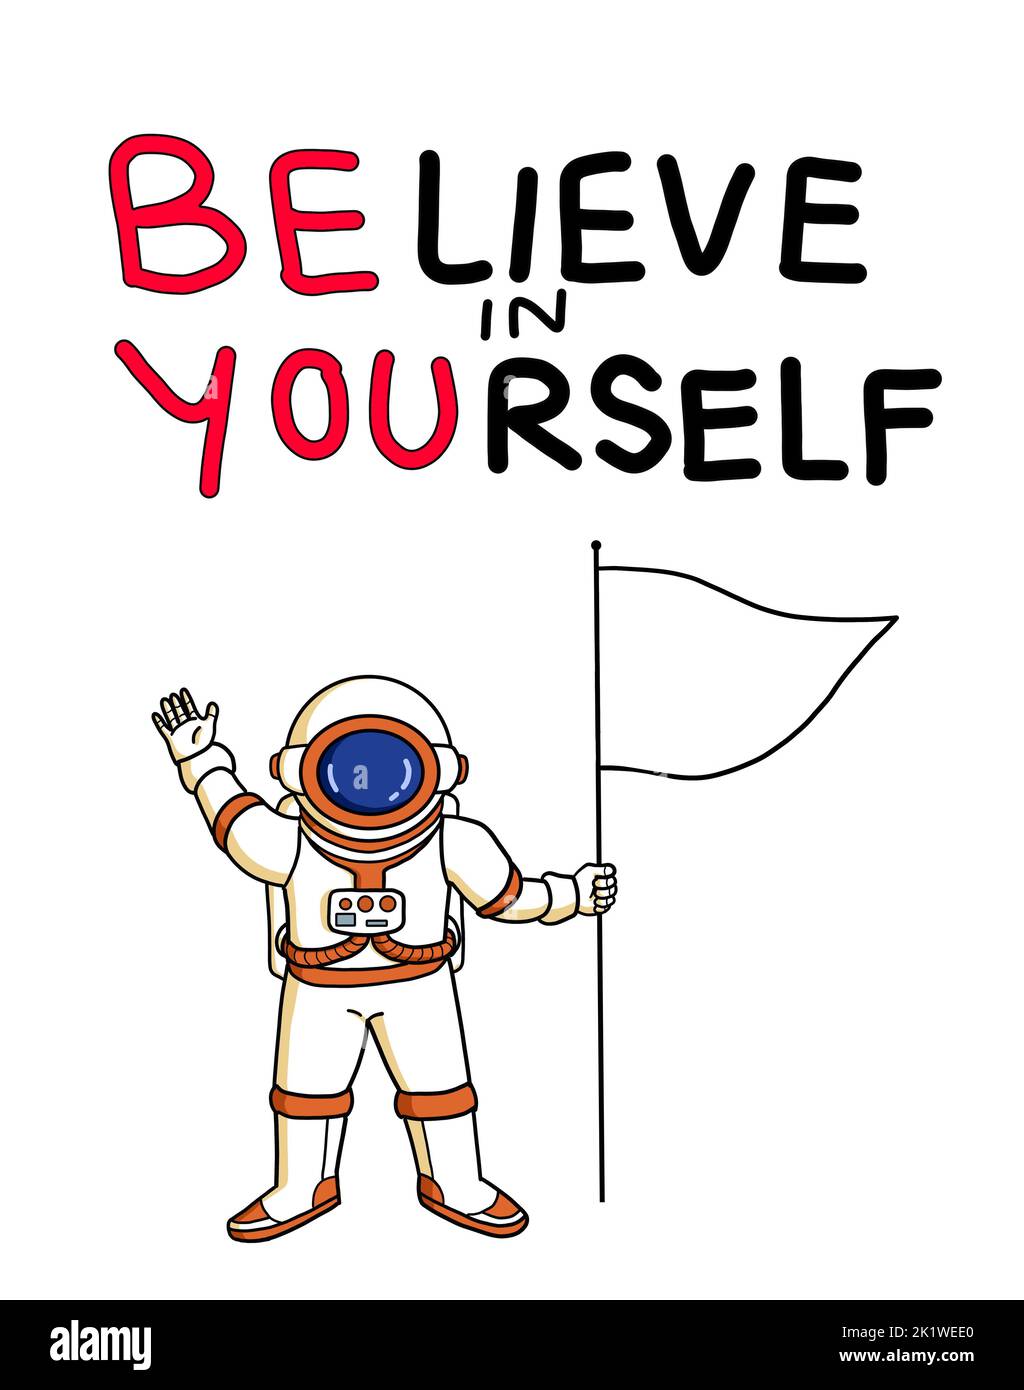 Una cita escrita a mano inspiradora 'Creer en ti mismo' y 'Ser tú'. Un astronauta con una bandera. Confianza en sí mismo, mejora, ánimo. Foto de stock